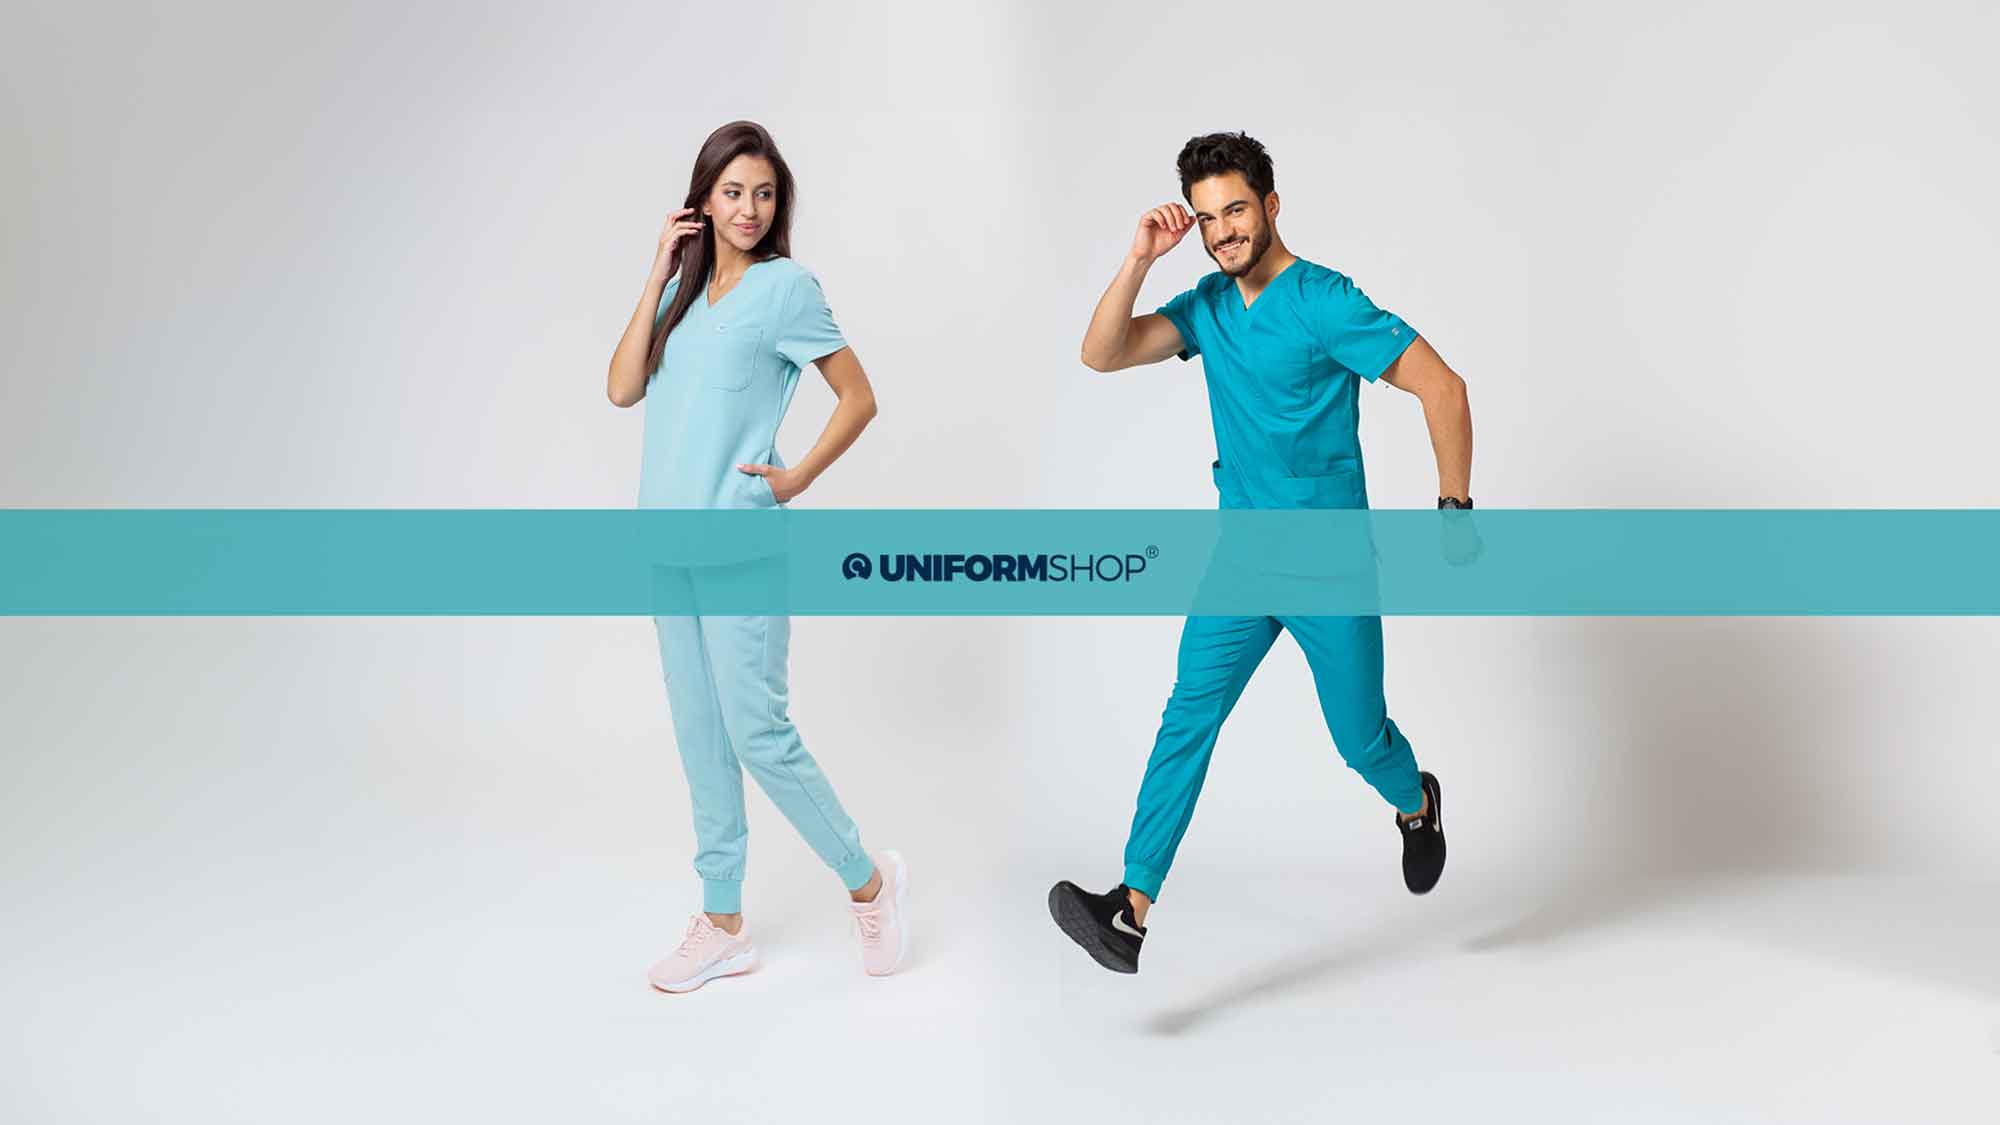 Stilvolle medizinische Kleidung von Uniformshop – der Partner in der täglichen Professionalität